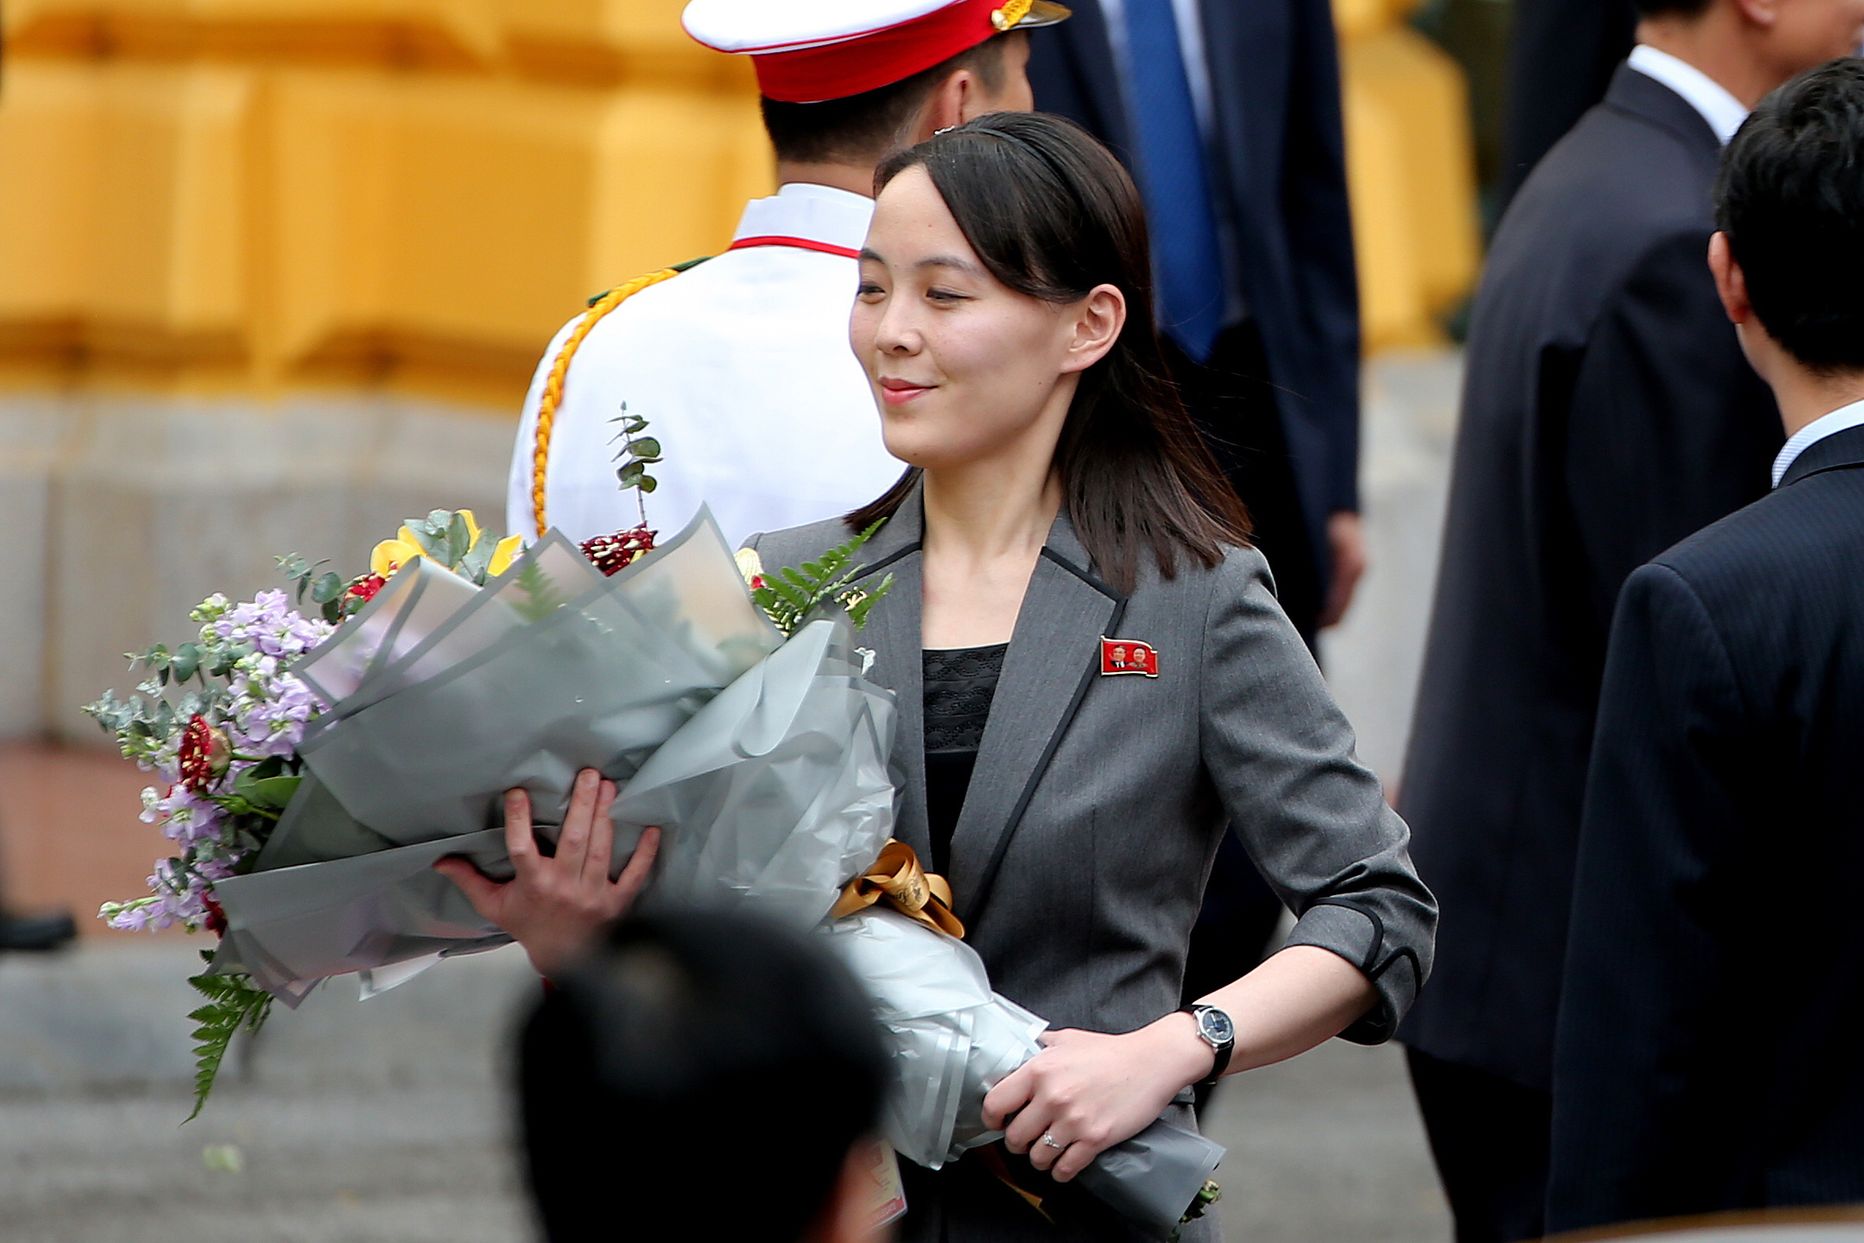 Põhja-Korea liidri Kim Jong-uni õde Kim Yo-jong buketiga 1. märtsil 2019 Vietnamis Hanois, kus ta venda välisvisiidil saatis